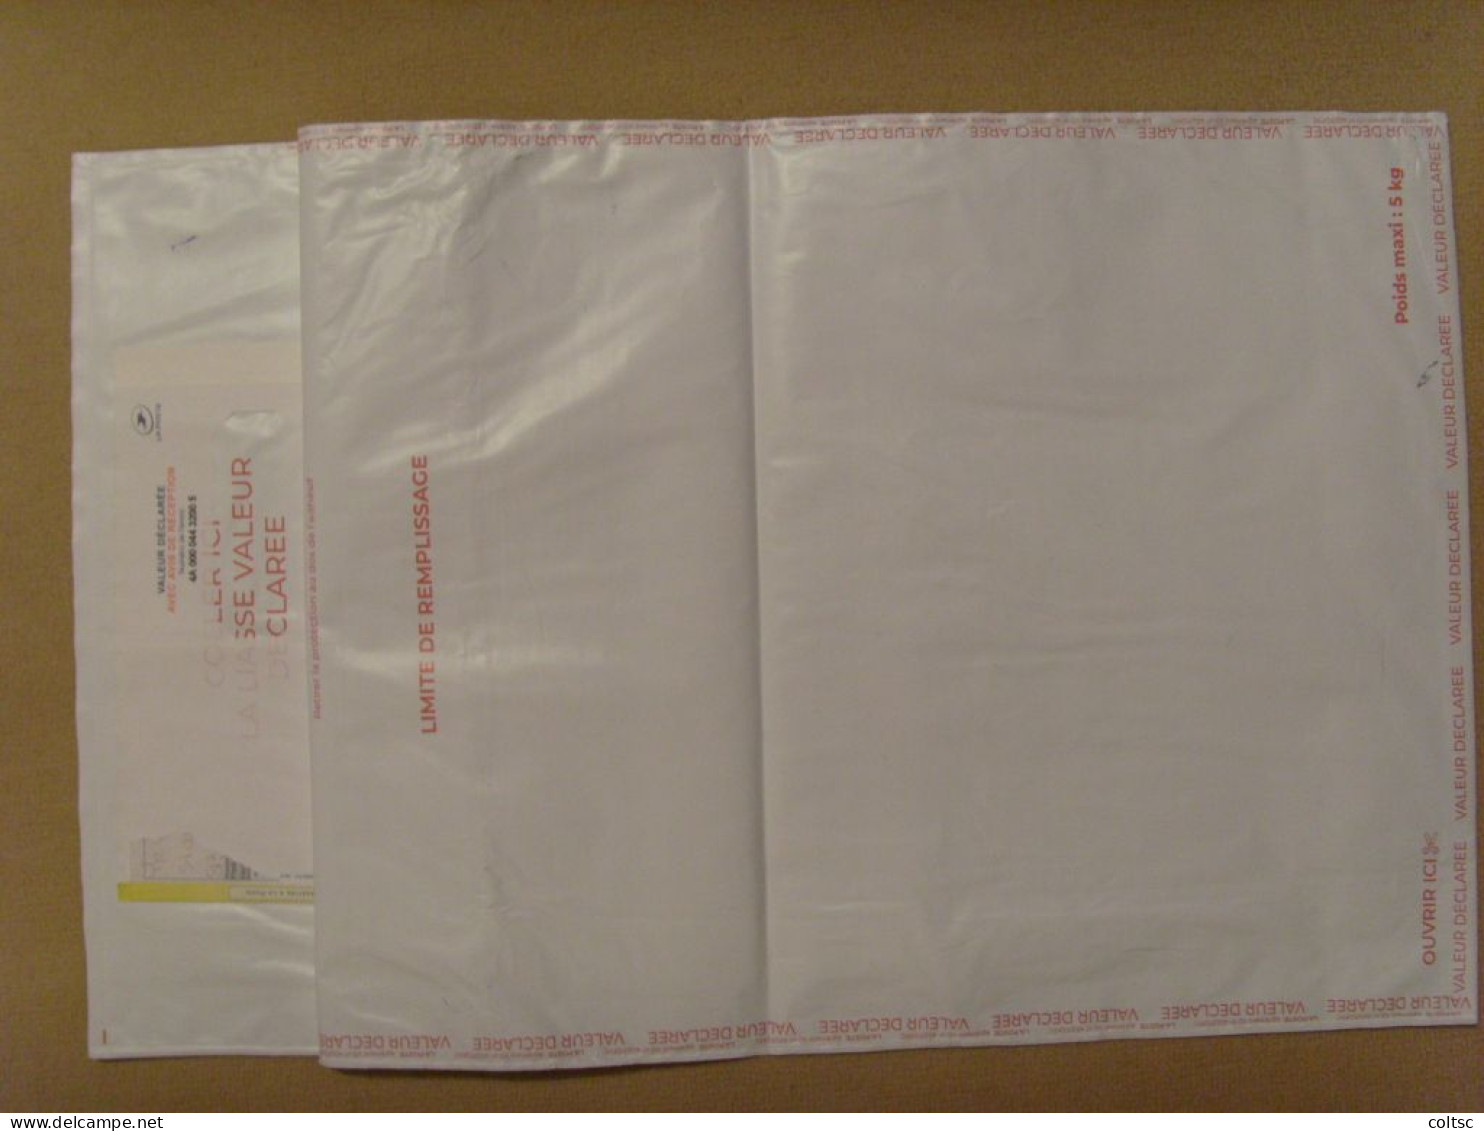 18941- Enveloppe Plastique Pour Envoi En Recommandé Avec Valeur Déclarée, Ici 1 200€, Affranchie à 164F Soit 25€ - Tarifs Postaux